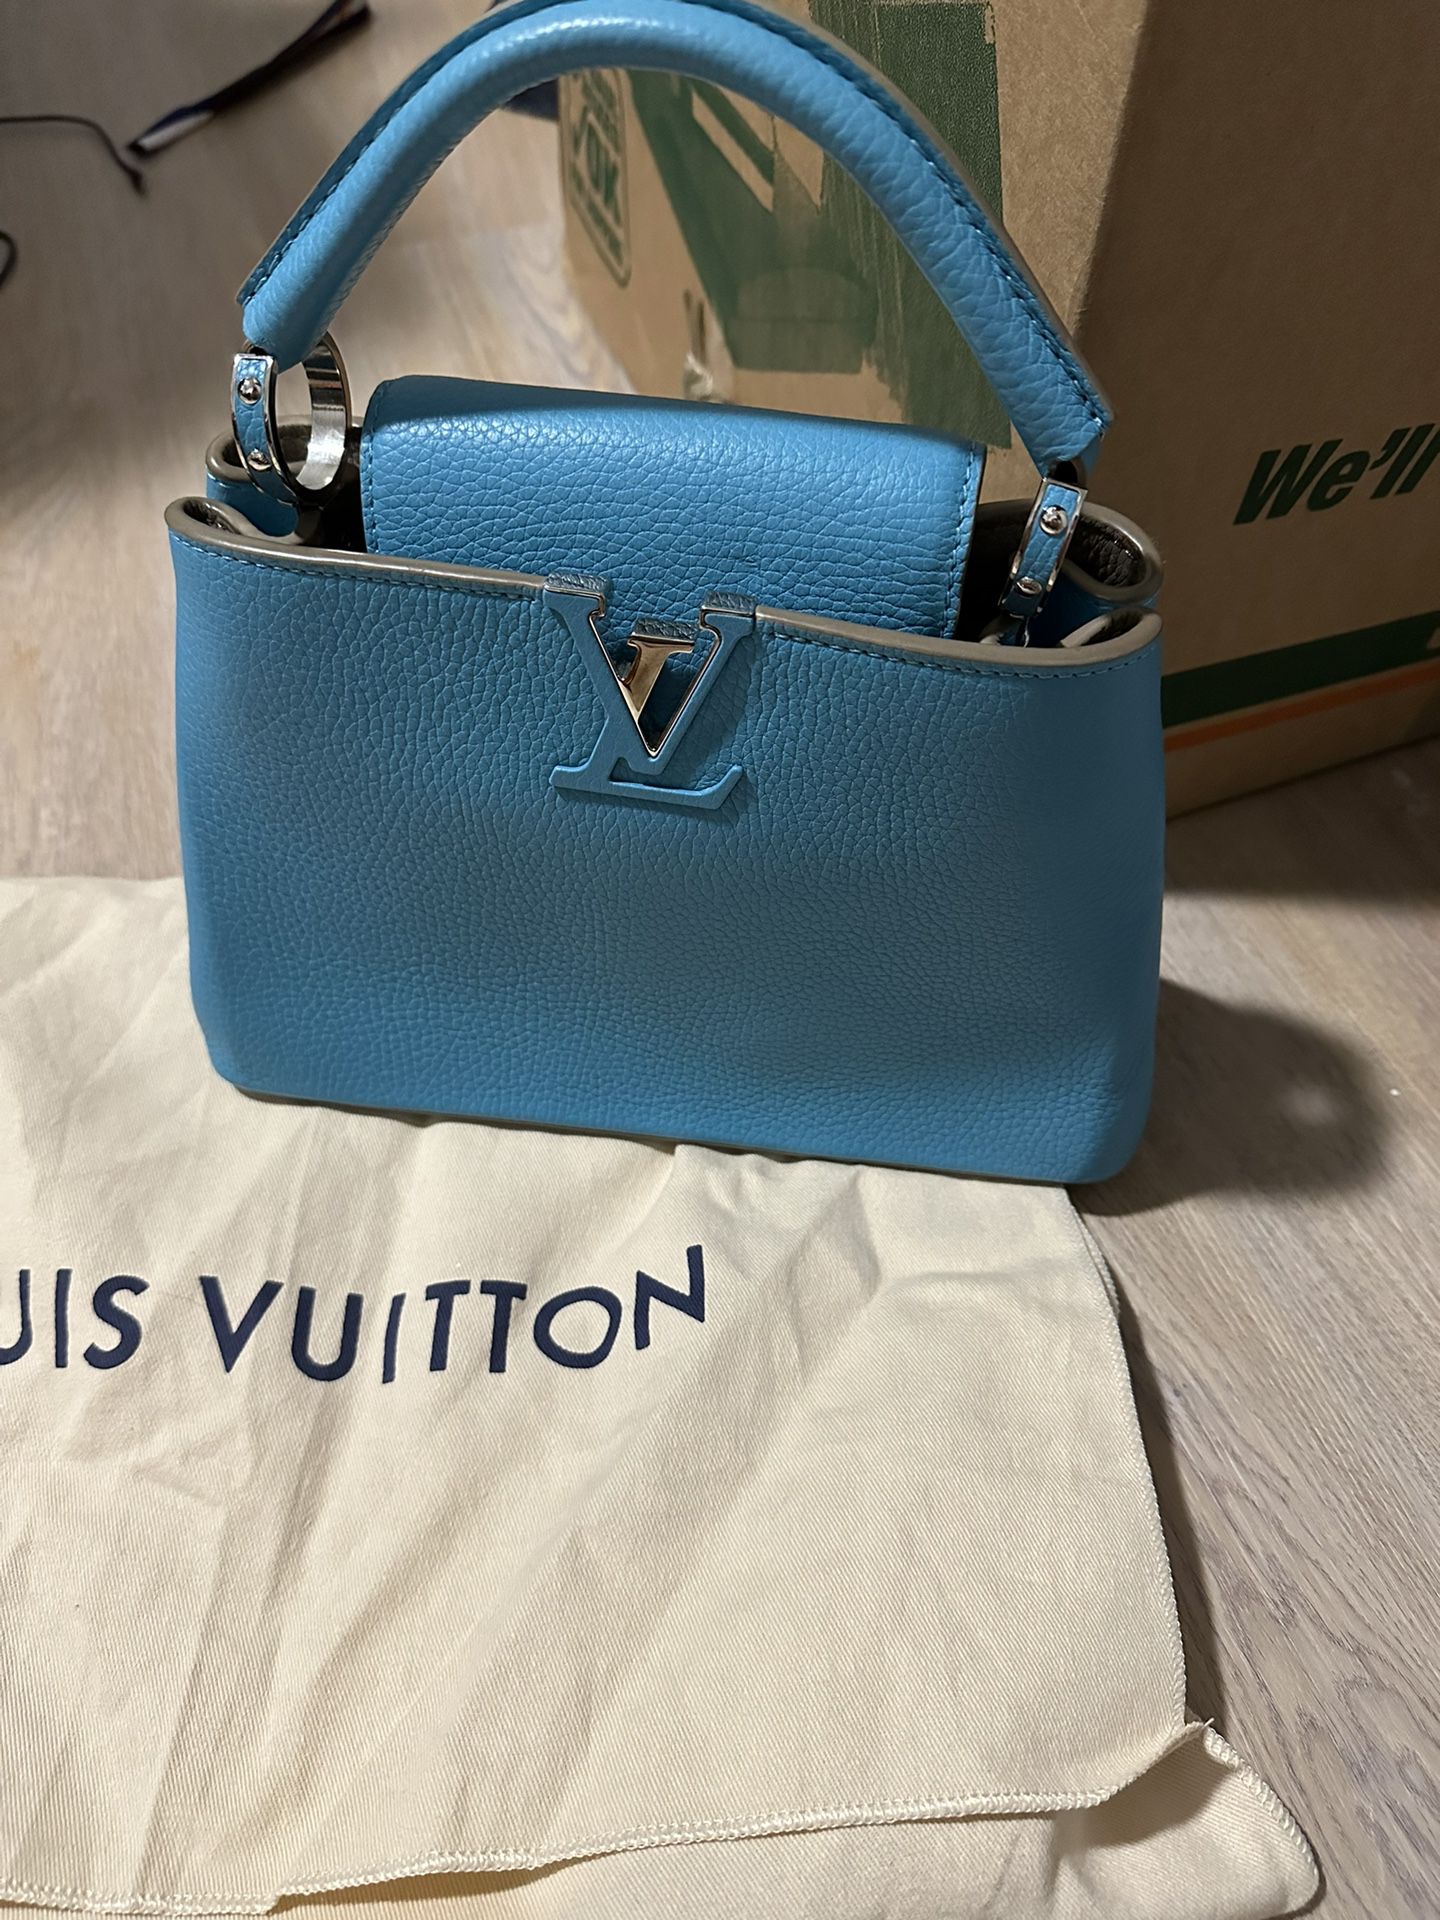 Louis Vuitton Capucines BB Bag Purse Turquoise 